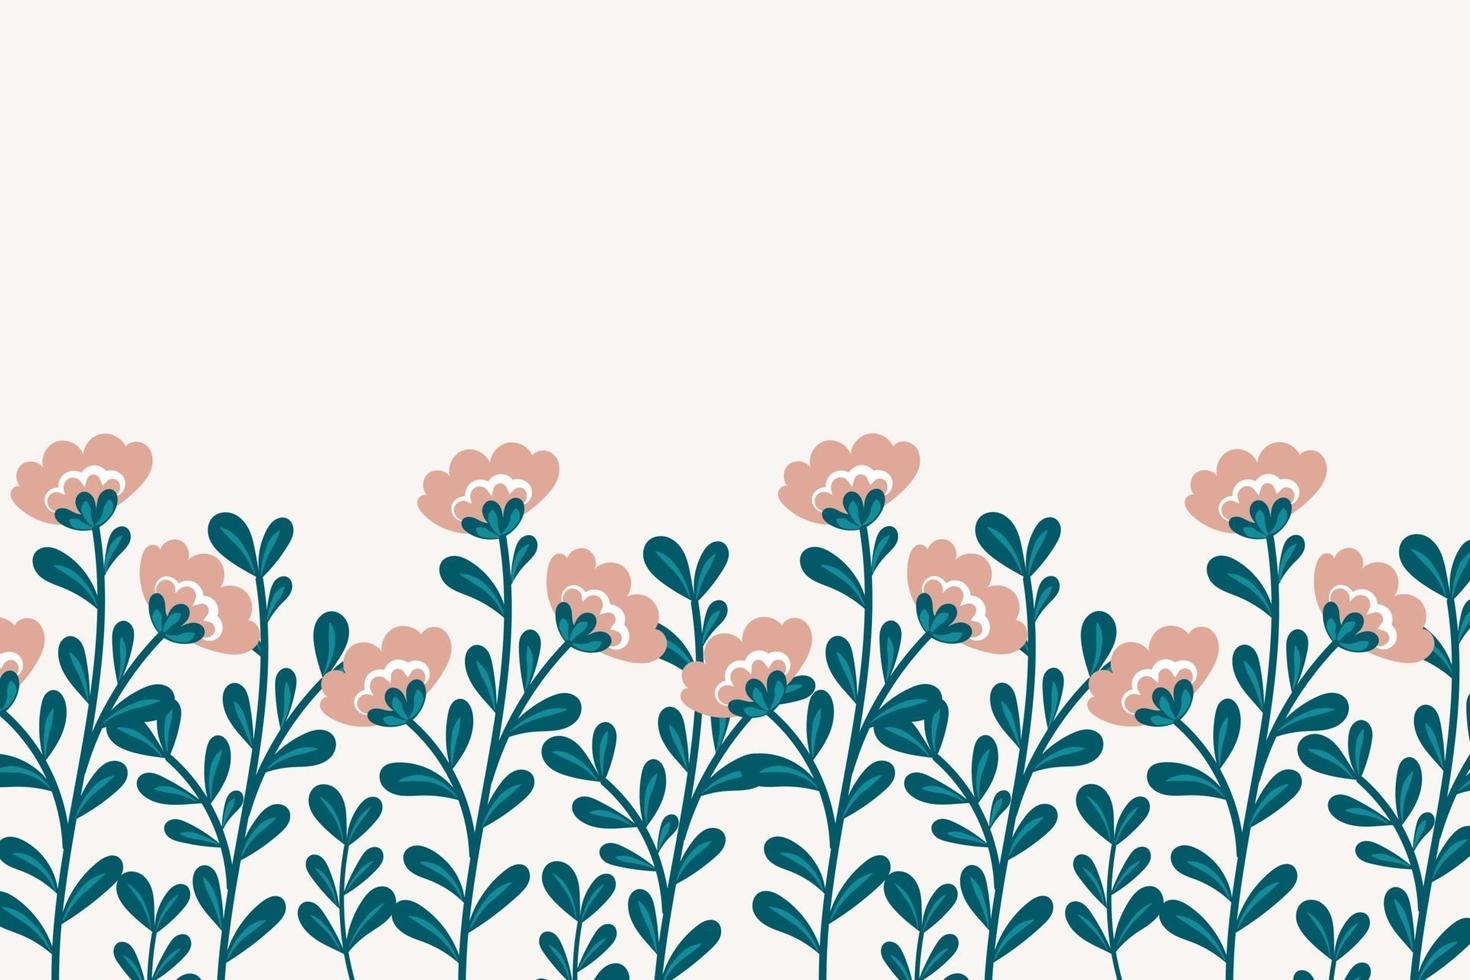 trendiger botanischer Hintergrund mit Blumen und grünen Blättern. Blumenbanner-Vorlage. vektor